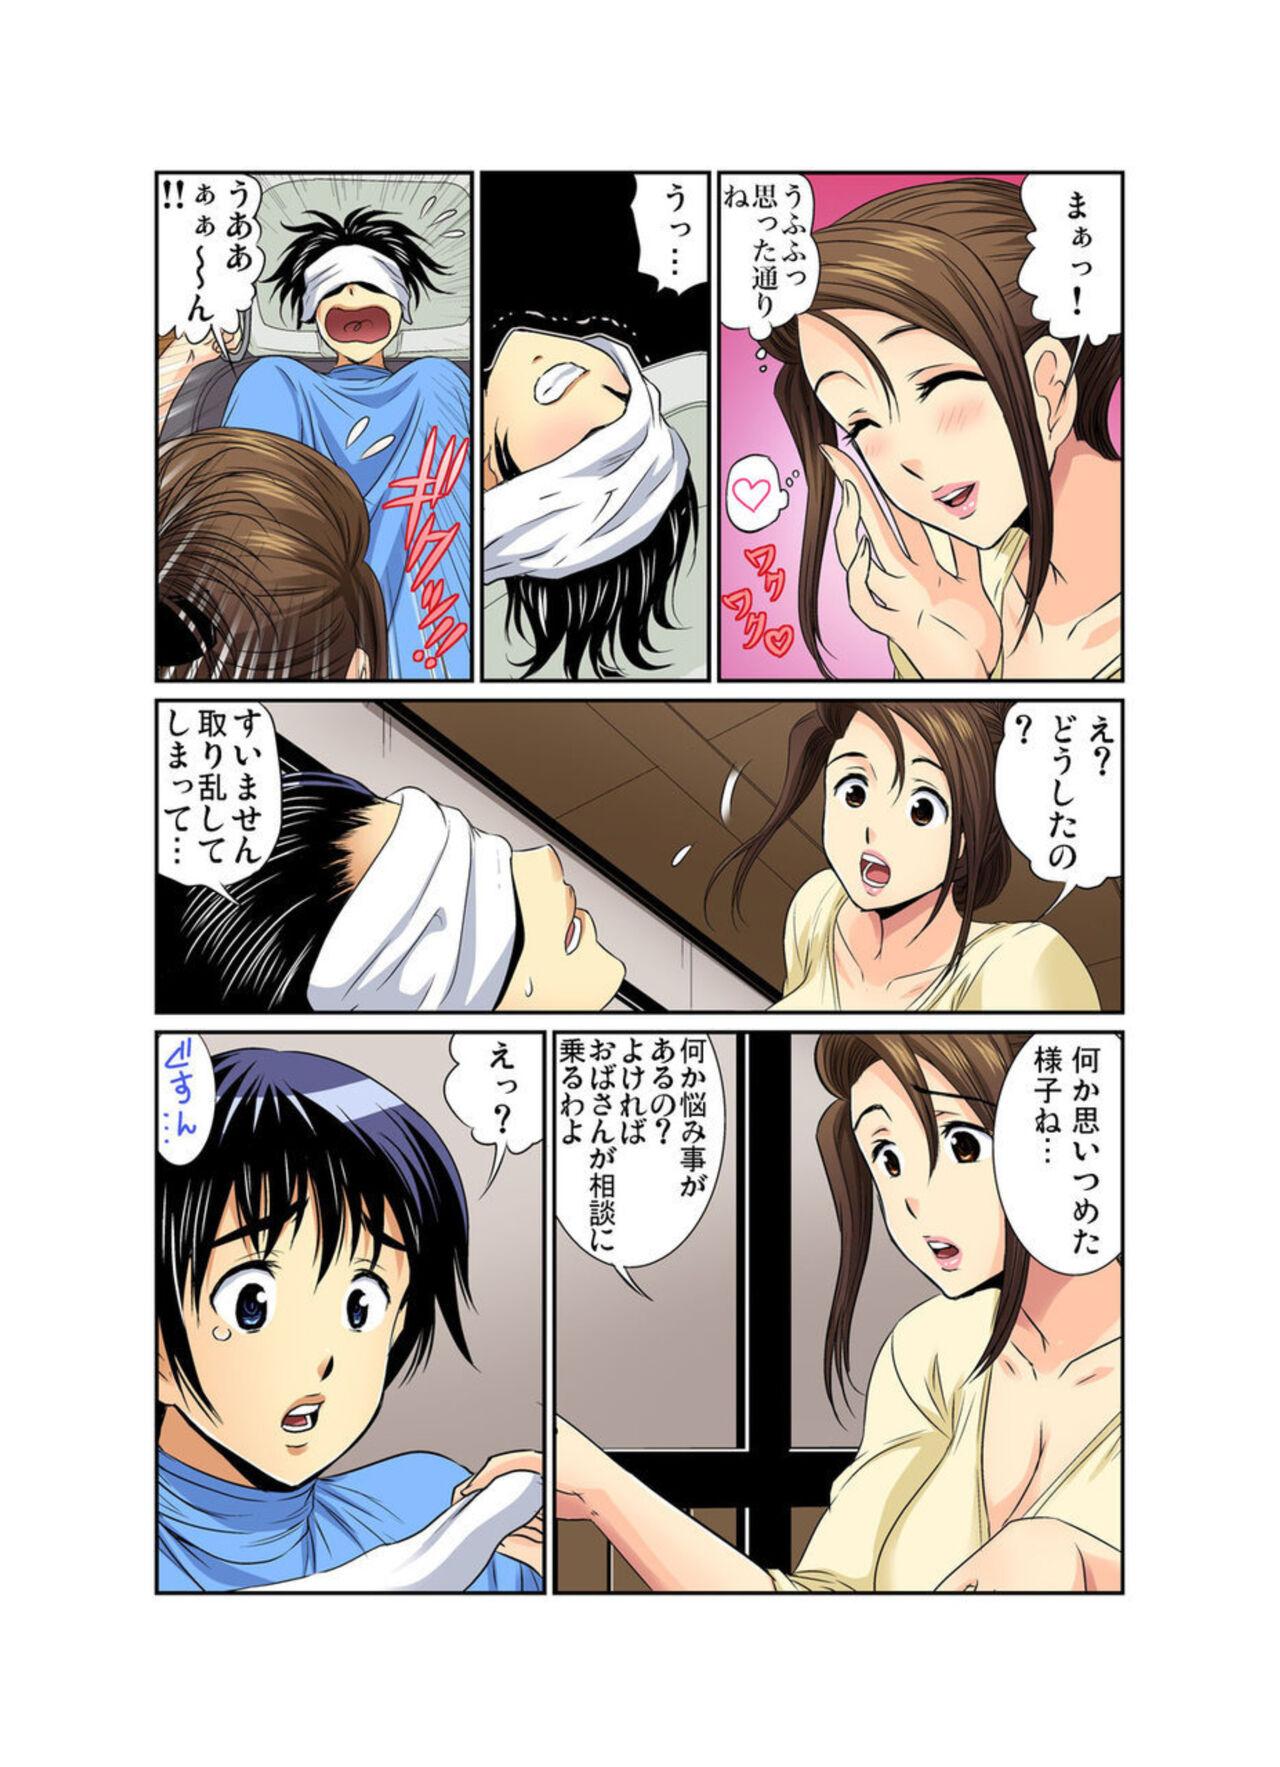 Gaping Erosugiru Tokoya no Obasan ~Otona no Option wa Ikaga? 7 Close Up - Page 5